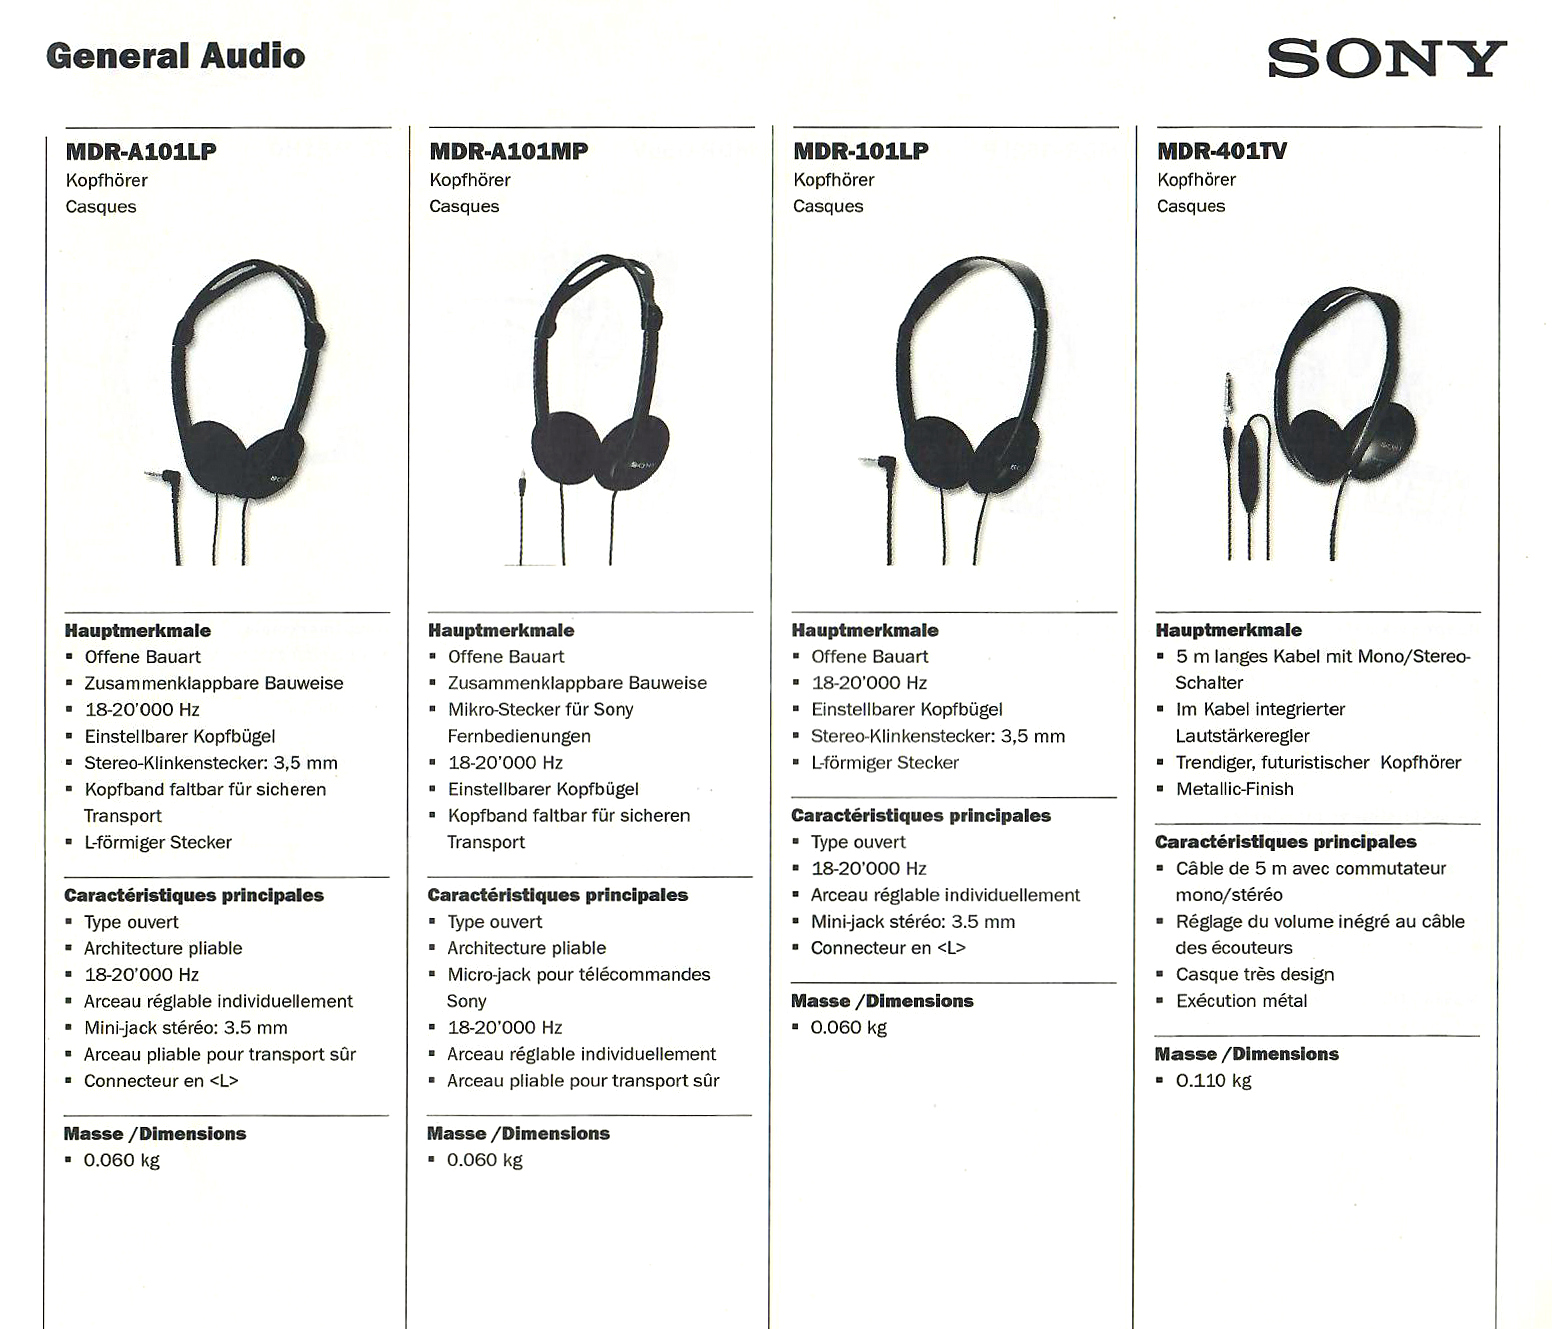 Sony MDR-A 101 LP-Daten-1999.jpg